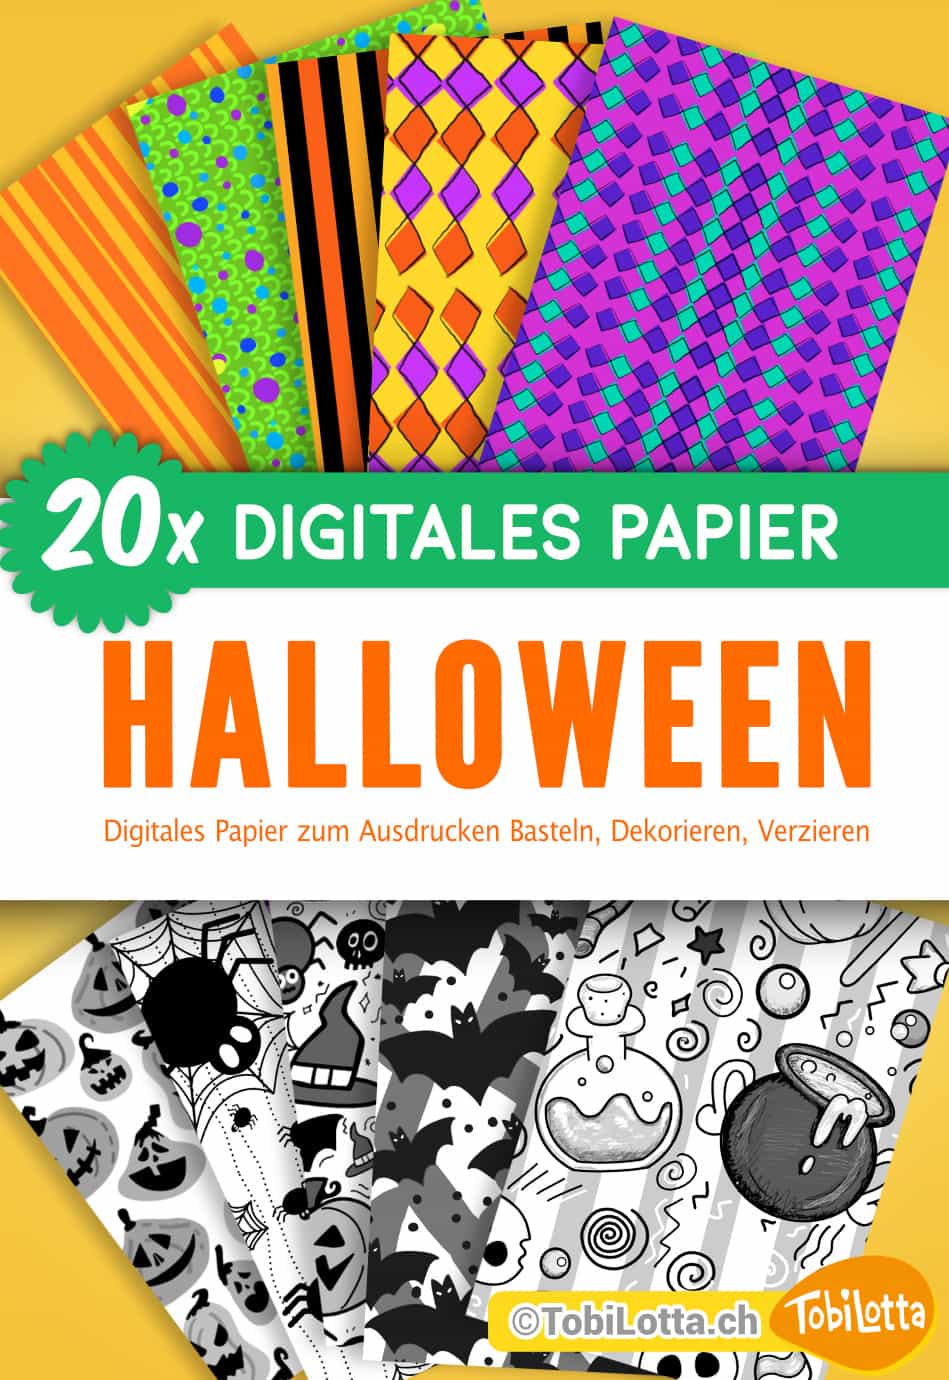 33274 Halloween Digital Papier zum Ausdrucken Bastelvorlagen shop druckvorlagen